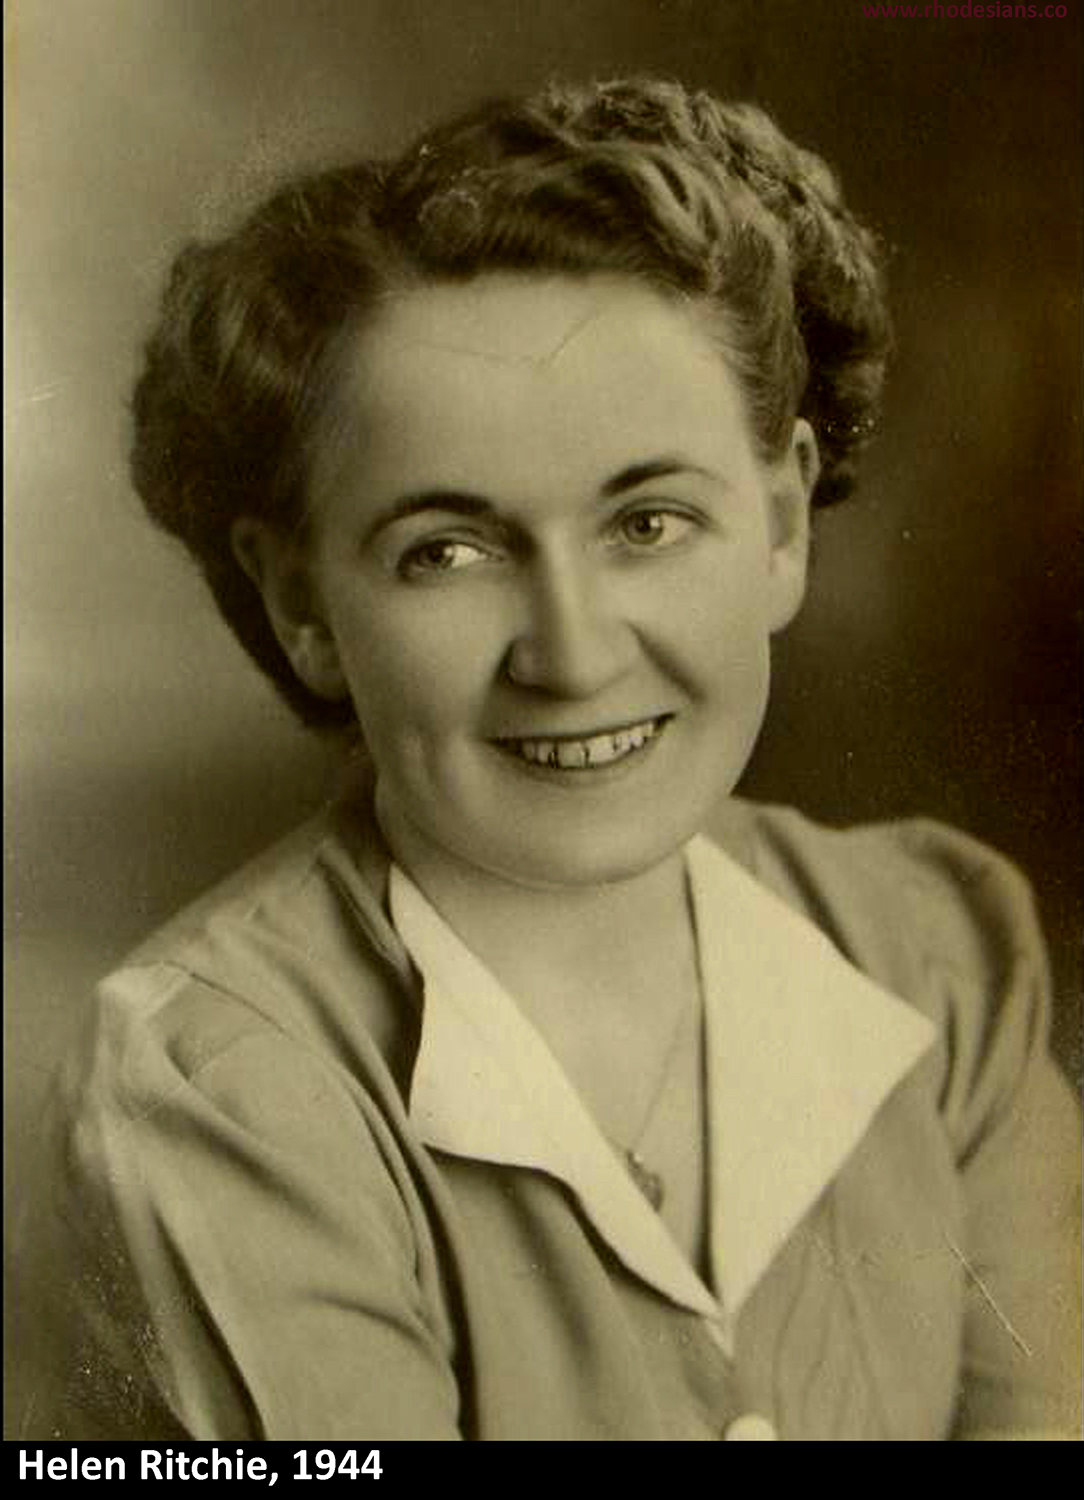 Helen Ritchie in 1944